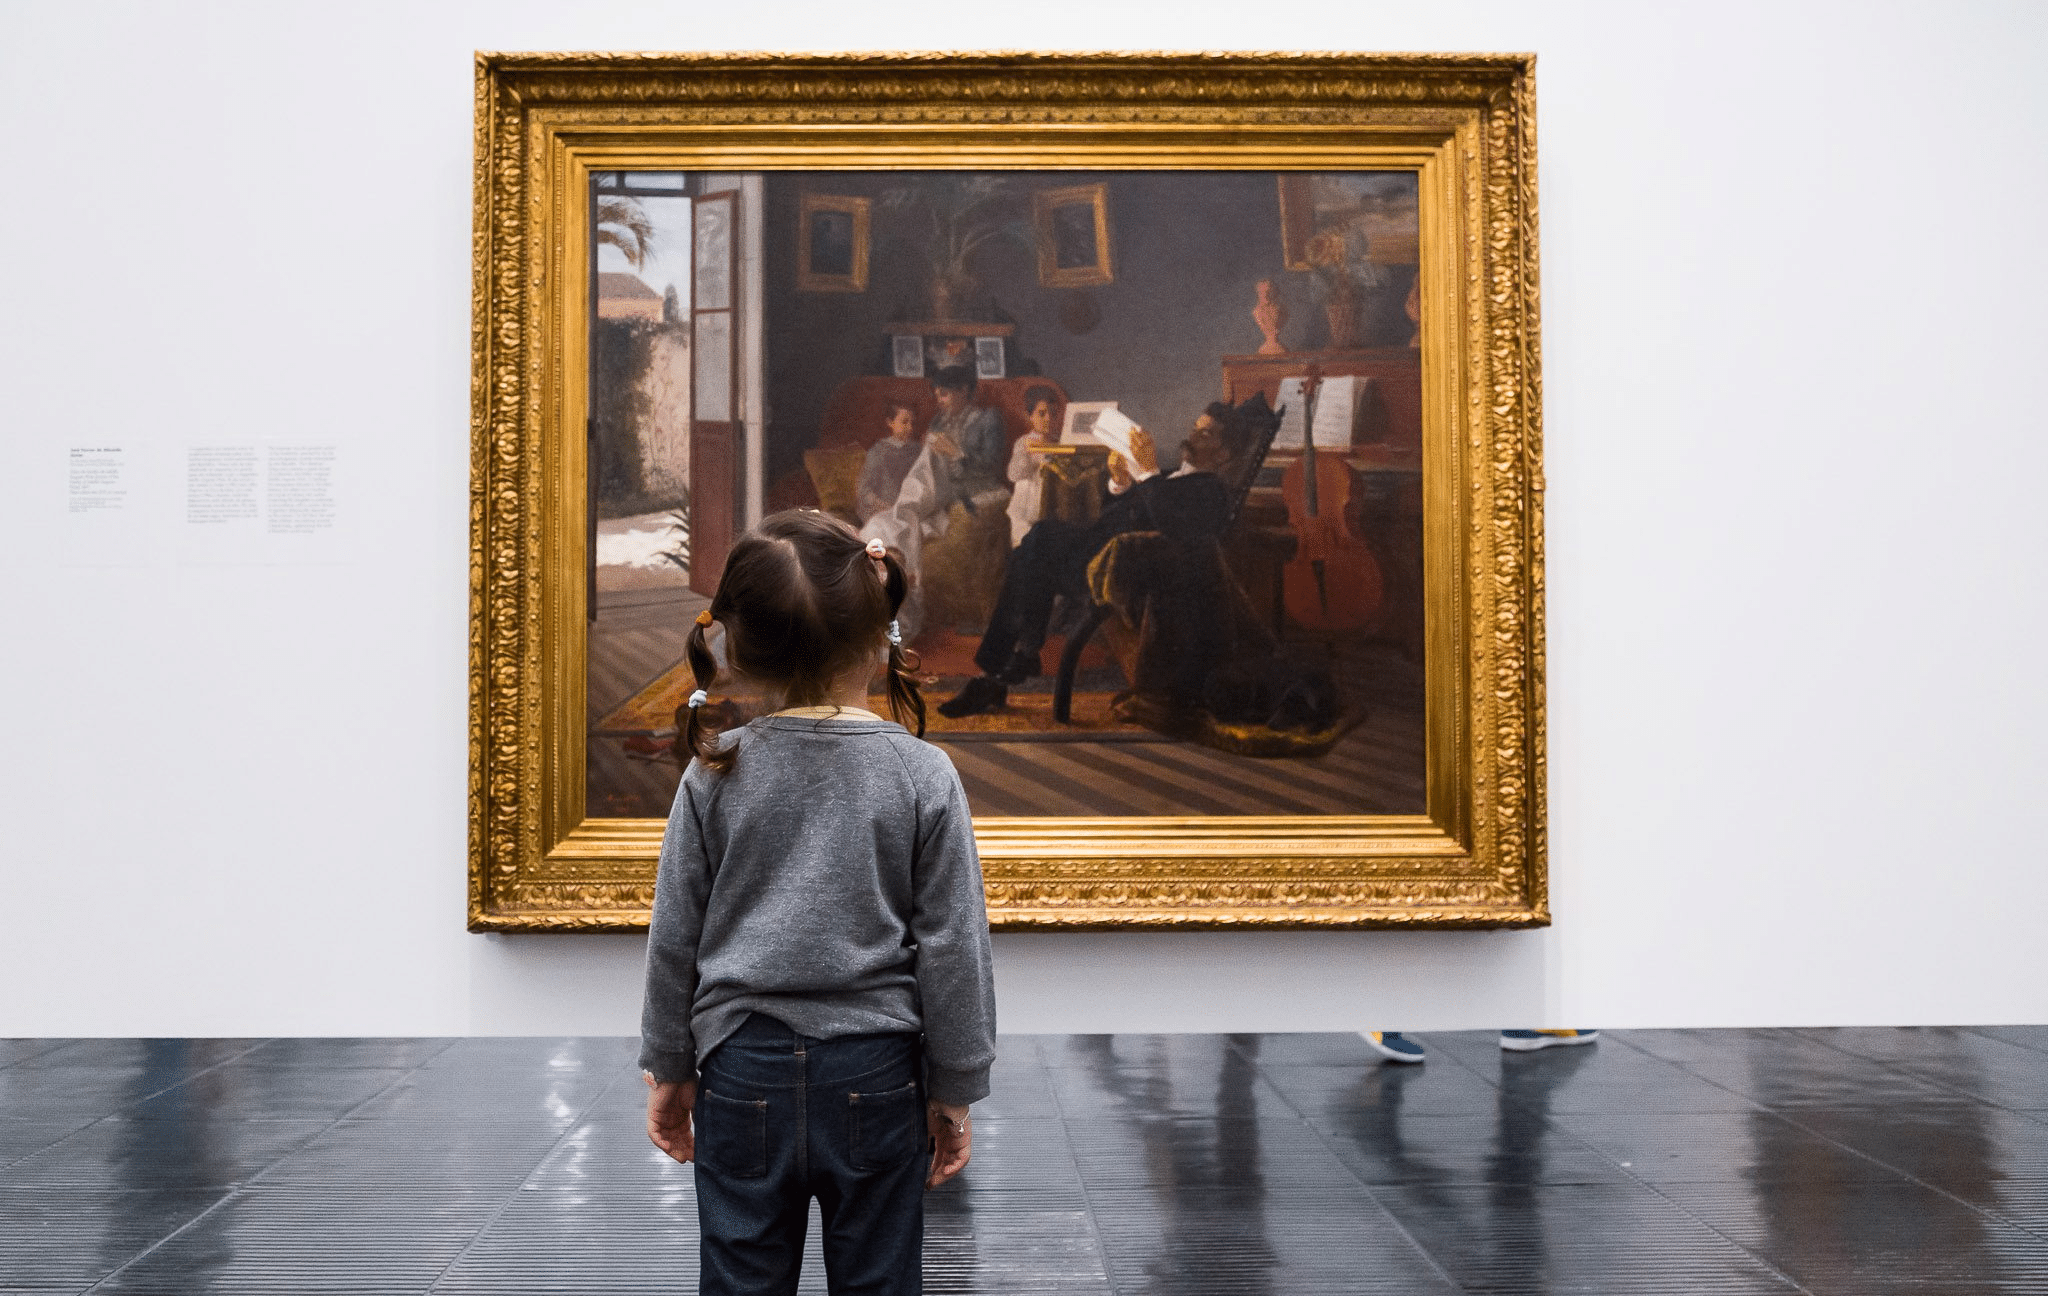 Descubra os benefícios surpreendentes de levar seus filhos aos museus: aprendizado, diversão e laços familiares mais fortes esperam por vocês!